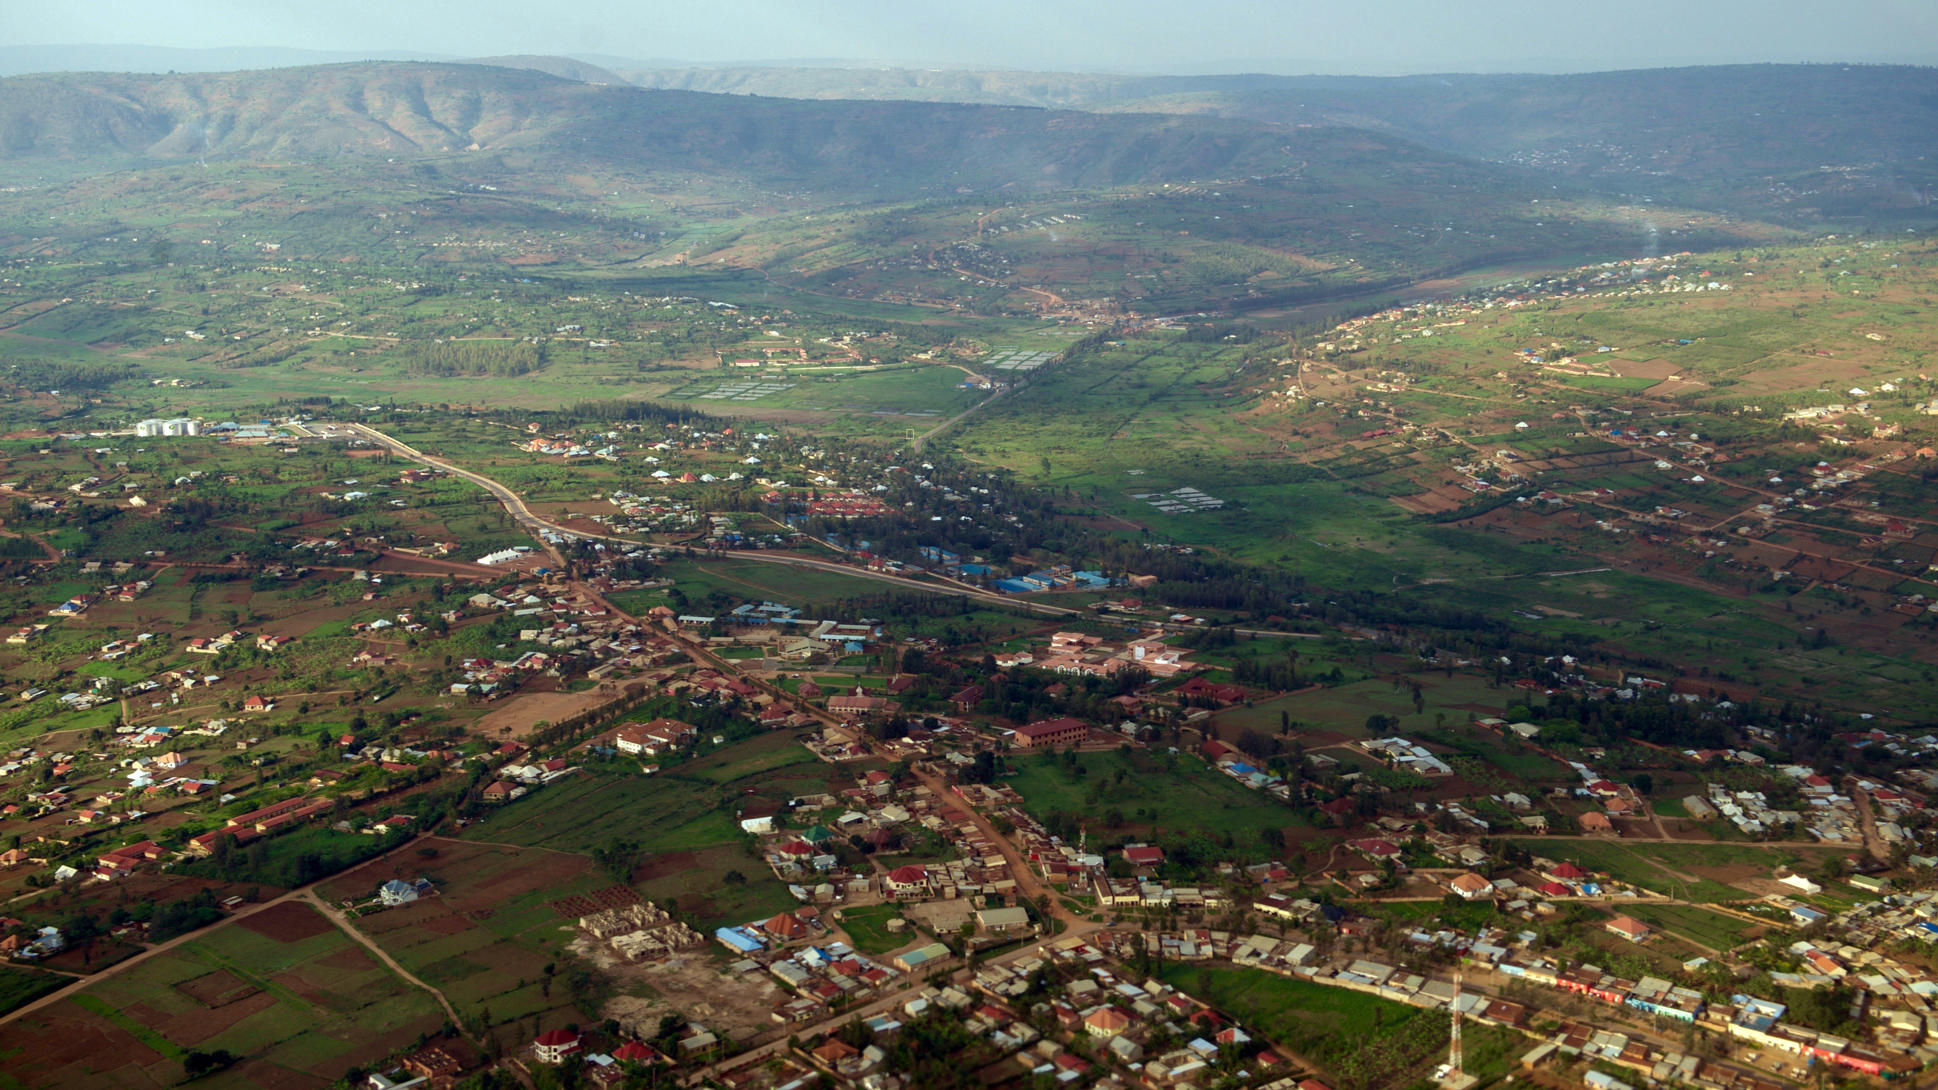 Zborul spre Kigali oferă vederi fantastice ale peisajului rural verde din Rwanda